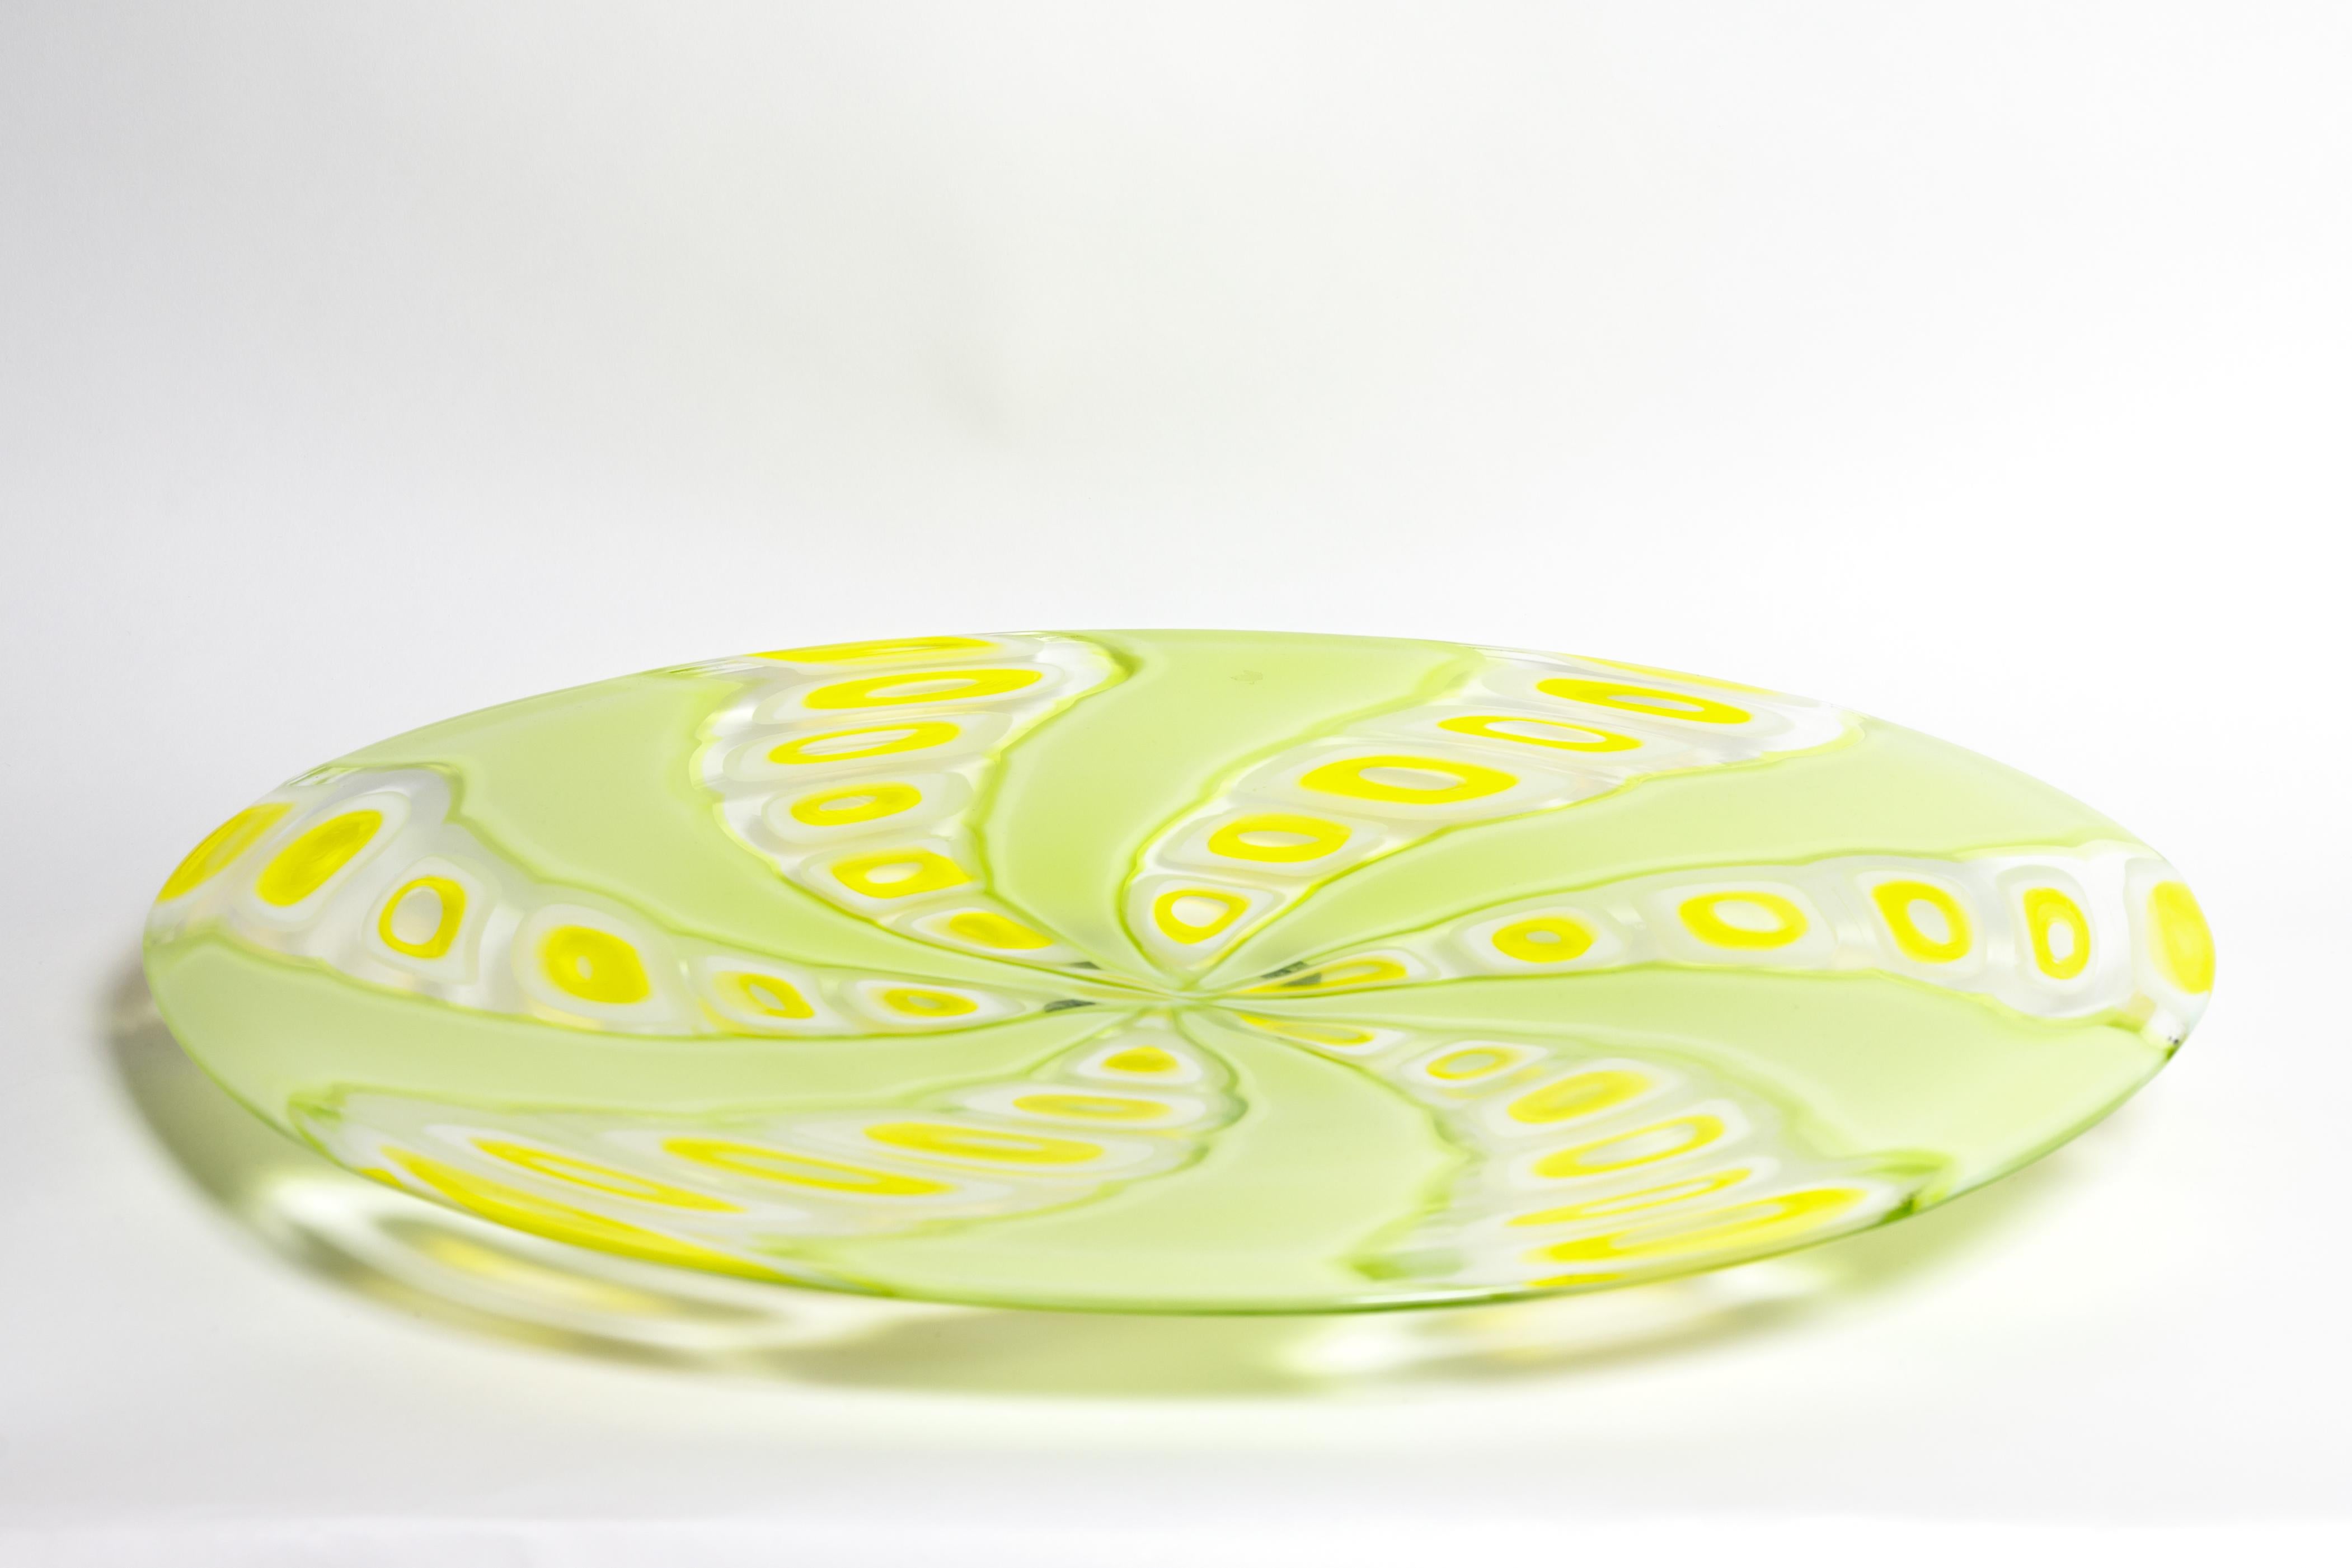 Grand plat en verre de Murano jaune et vert citron.